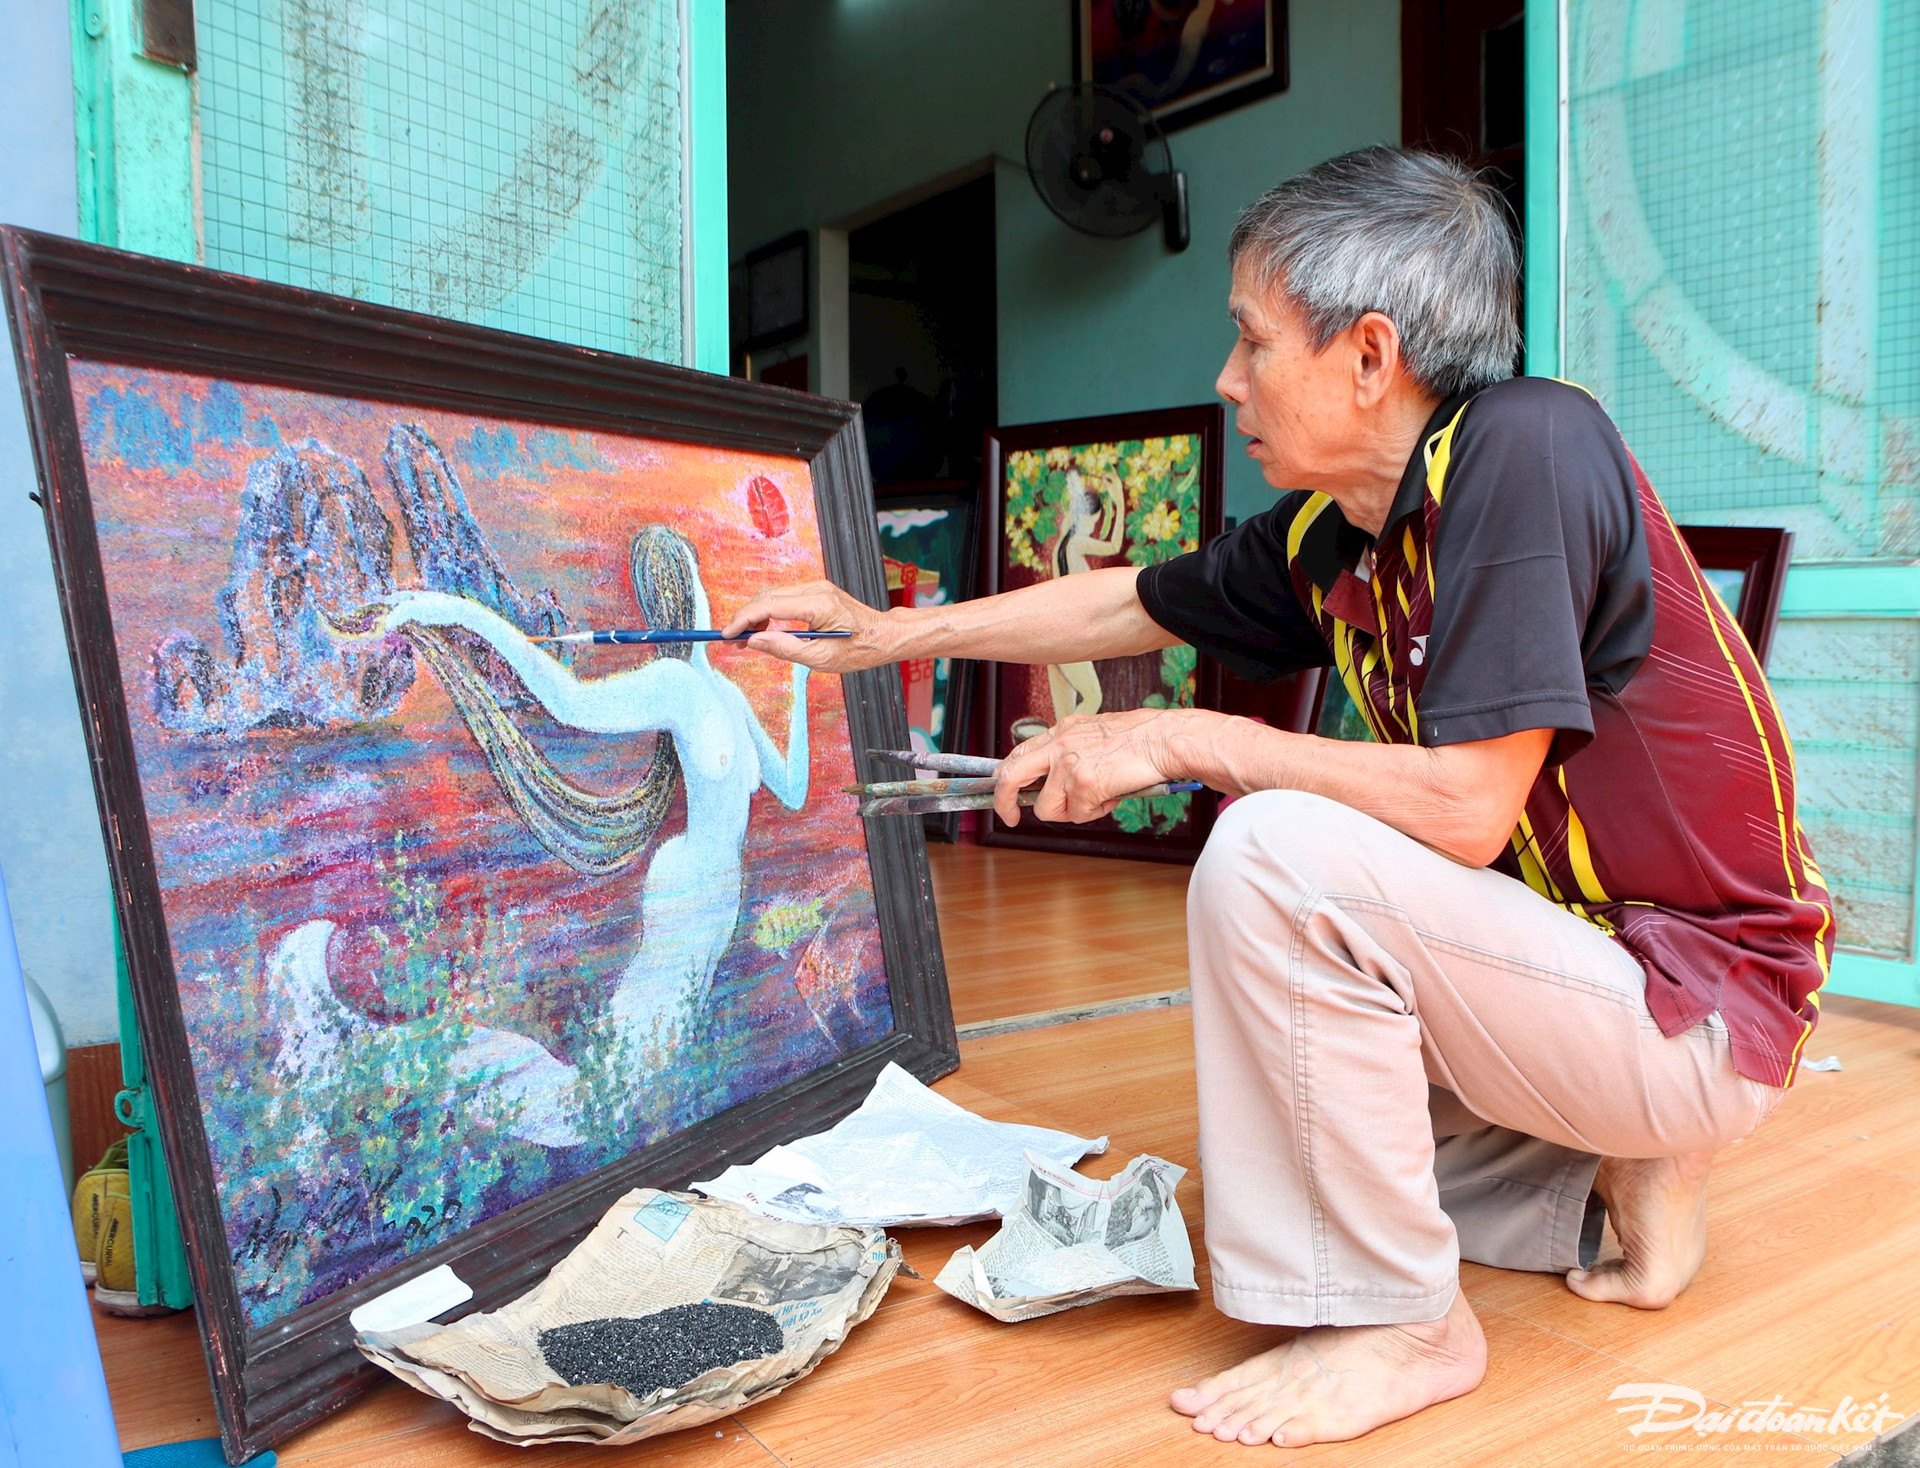 Hoạ sĩ Nguyễn Hiệp đang kiểm tra lớp than và điệp trên tác phẩm của mình